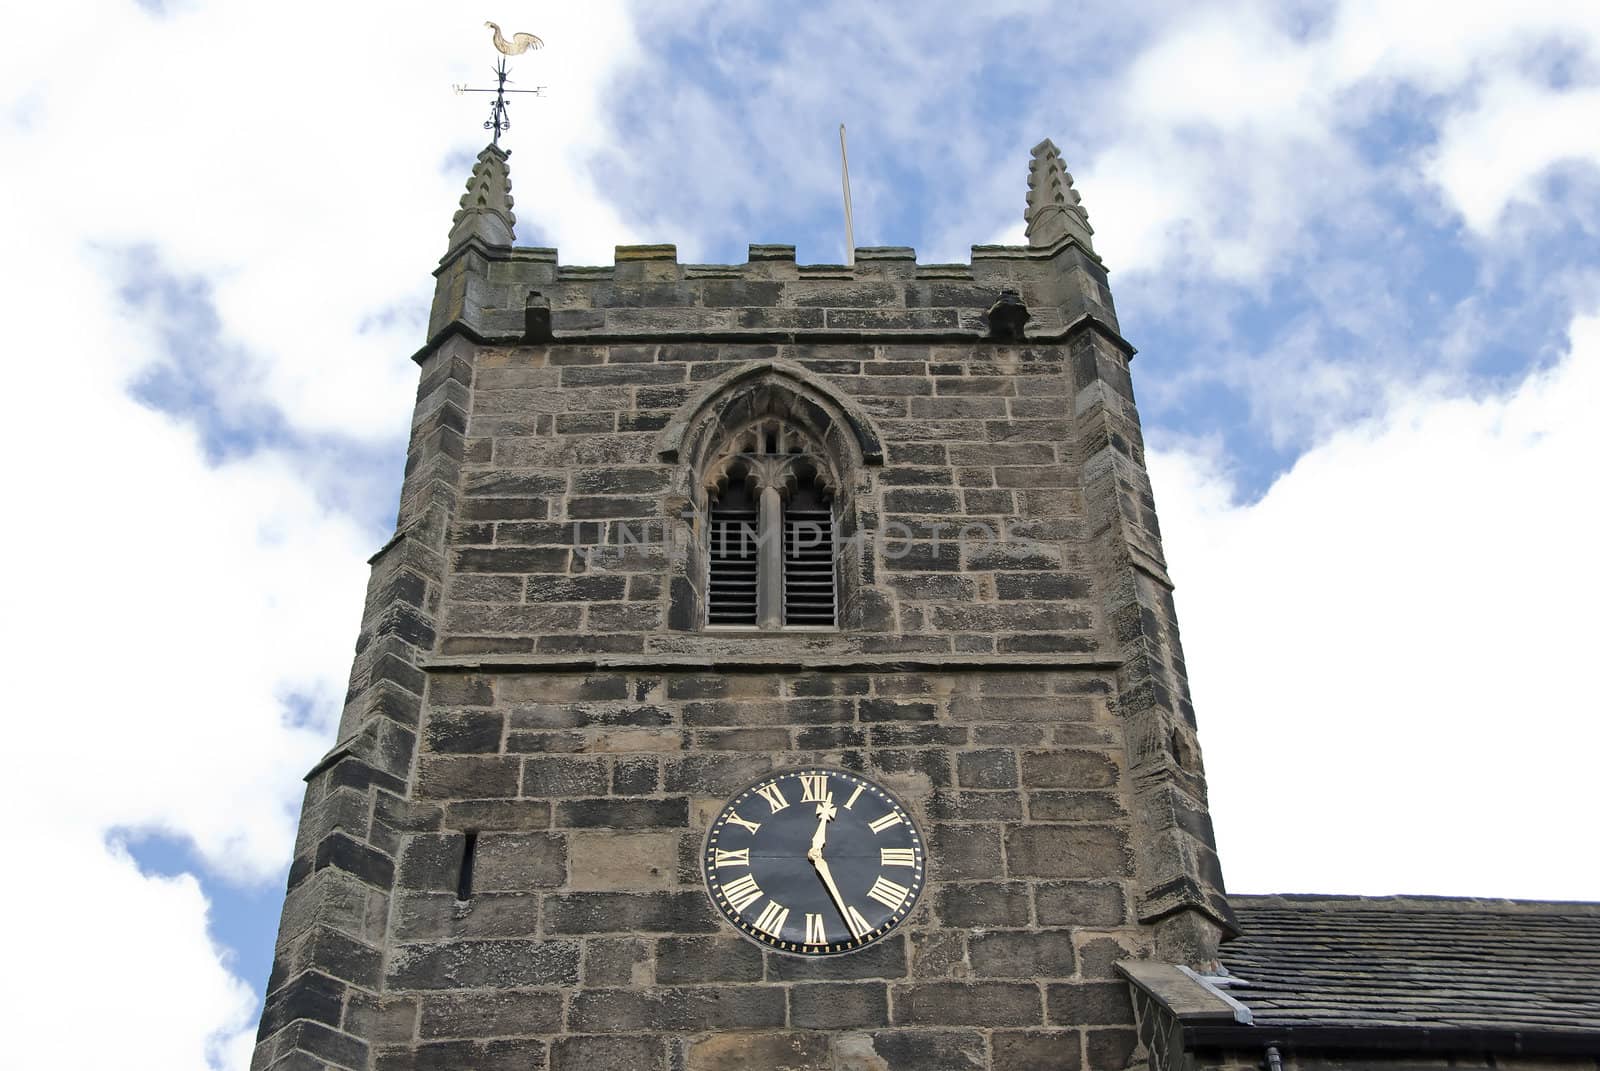 A Stone Built English Church Tower